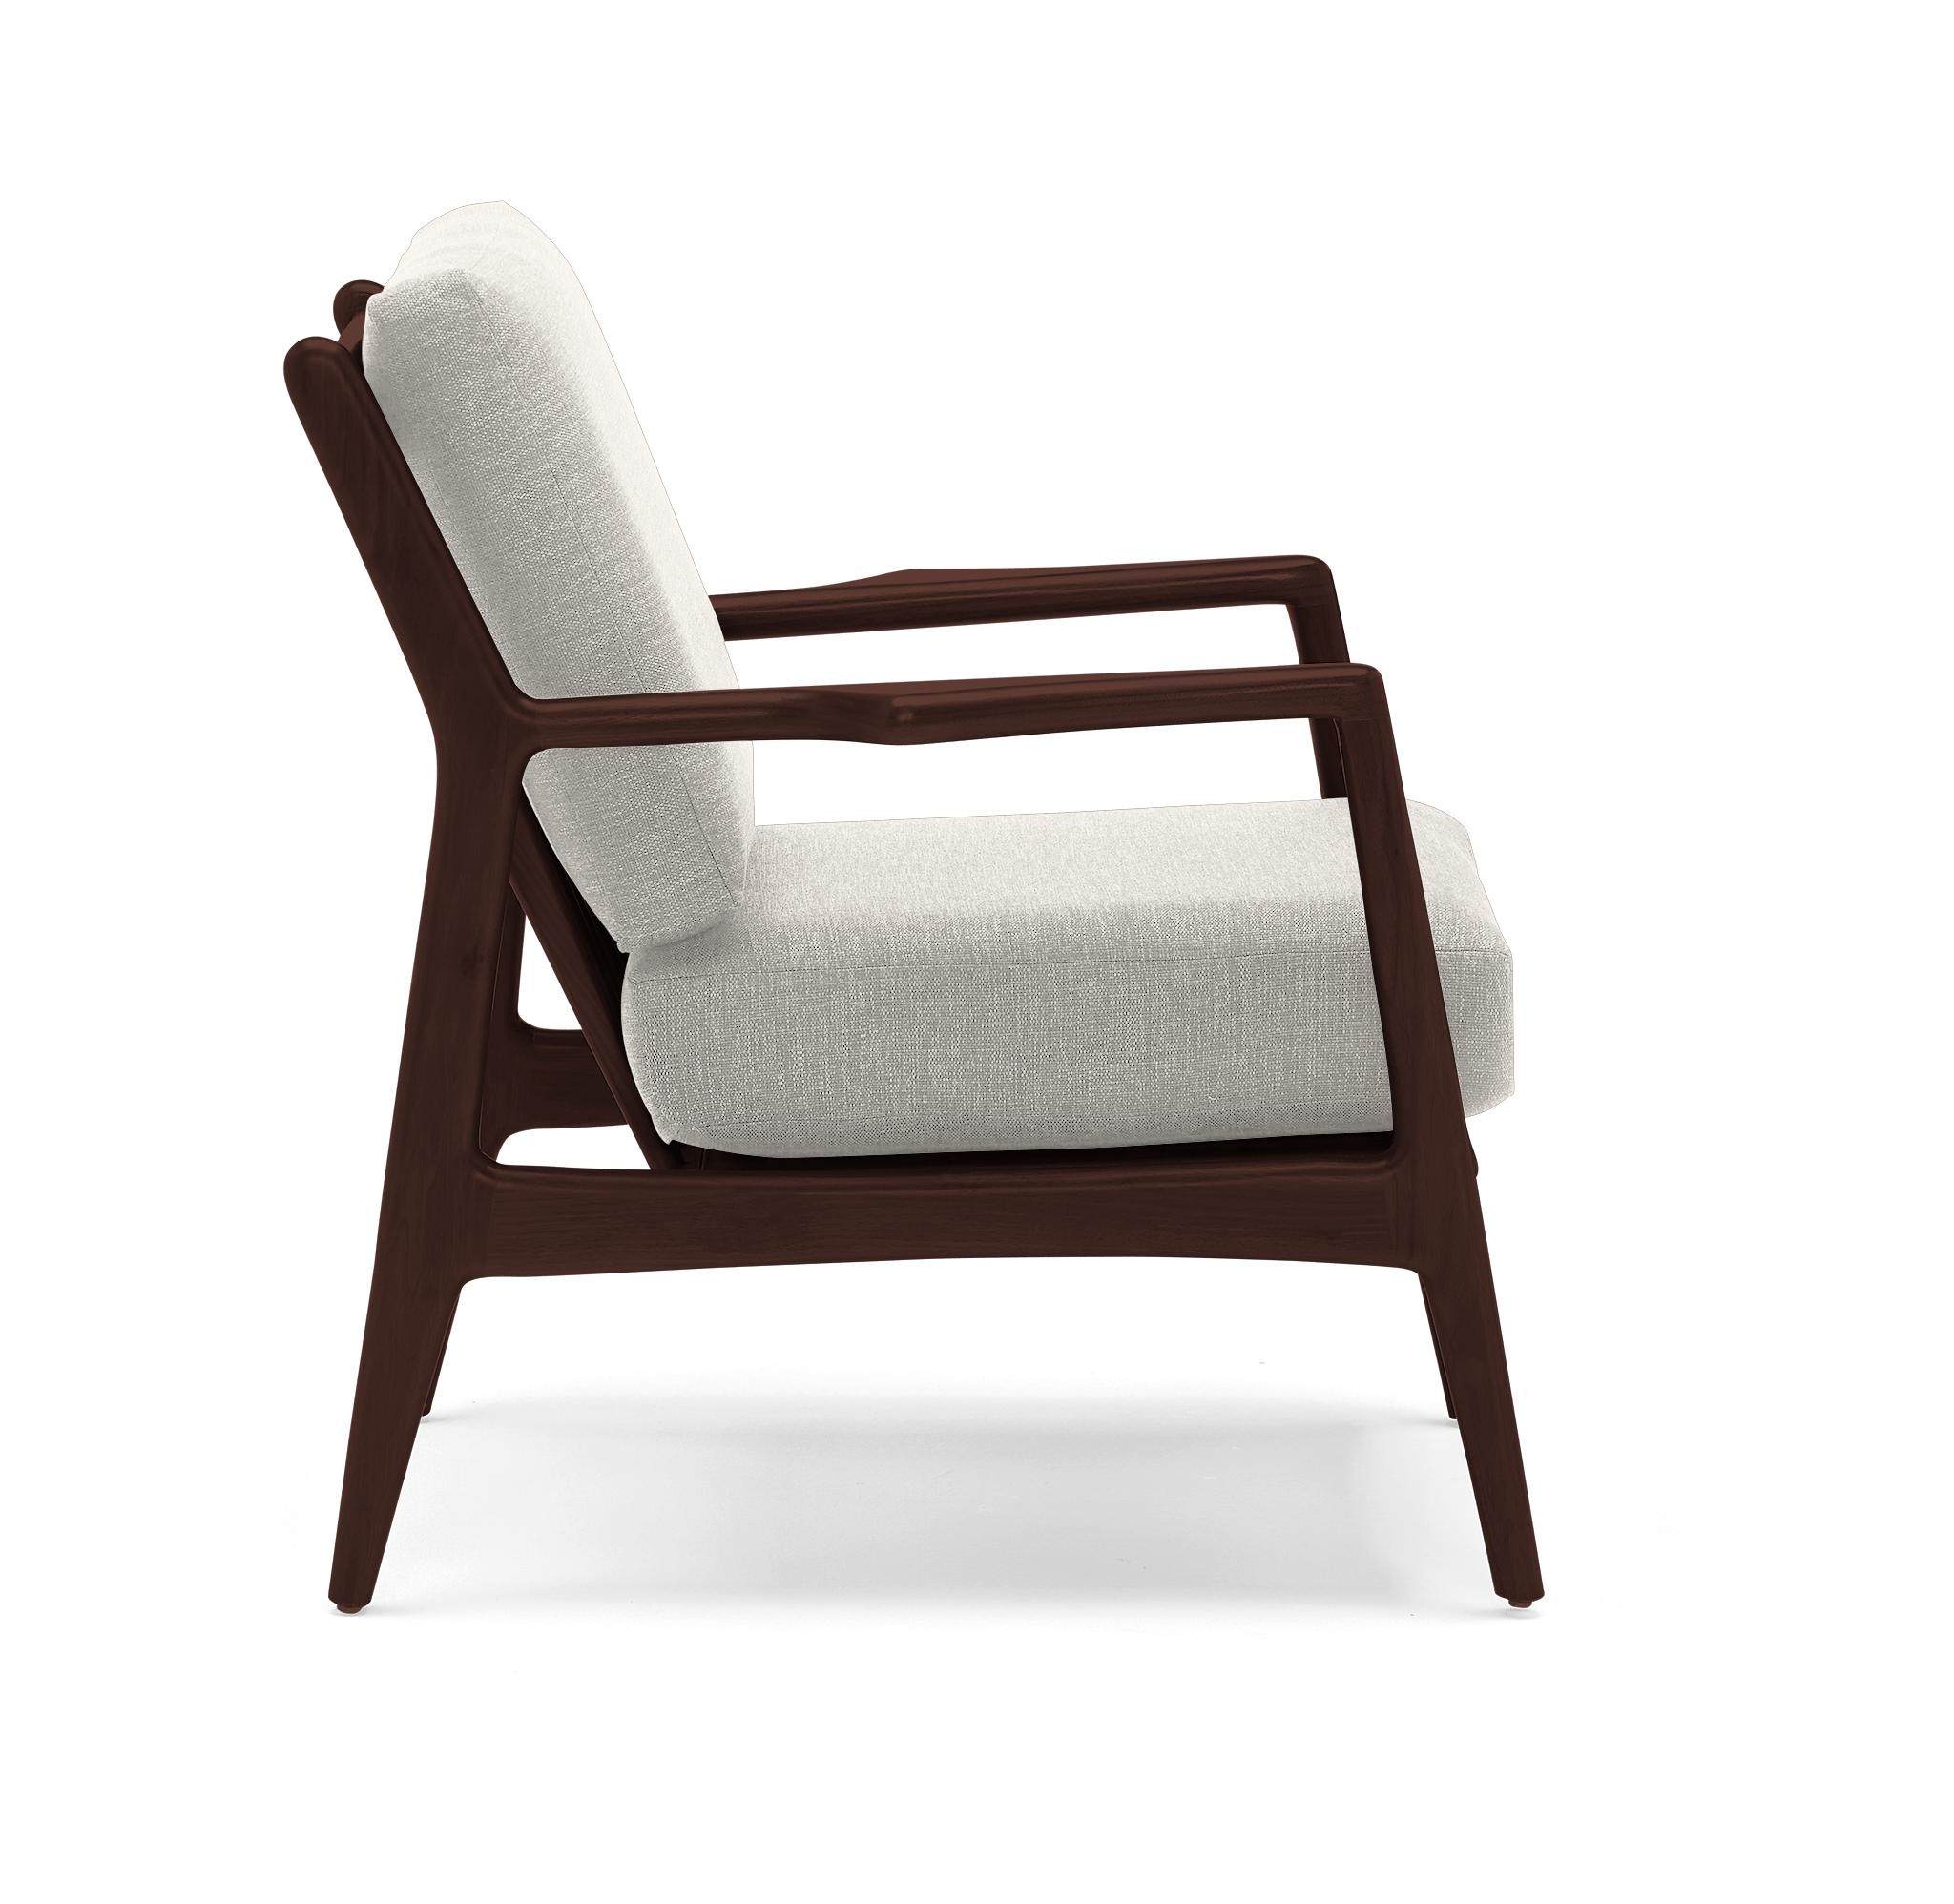 White Collins Mid Century Modern Chair - Bloke Cotton - Walnut - Image 2